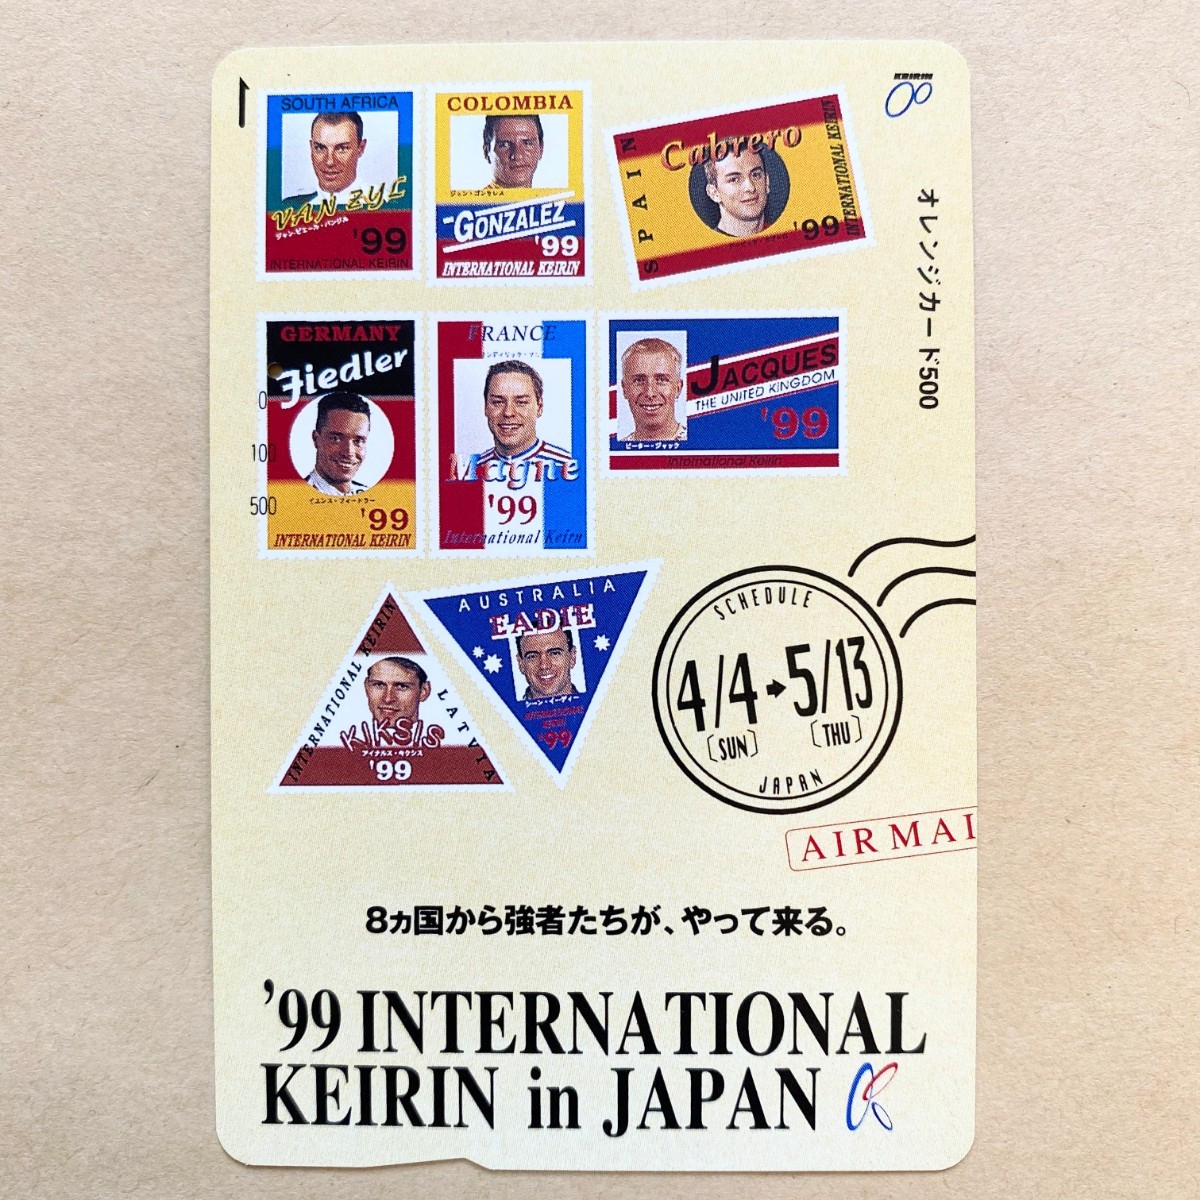 【使用済】 競輪オレンジカード JR東日本 '99 INTERNATIONAL KEIRIN in JAPAN_画像1